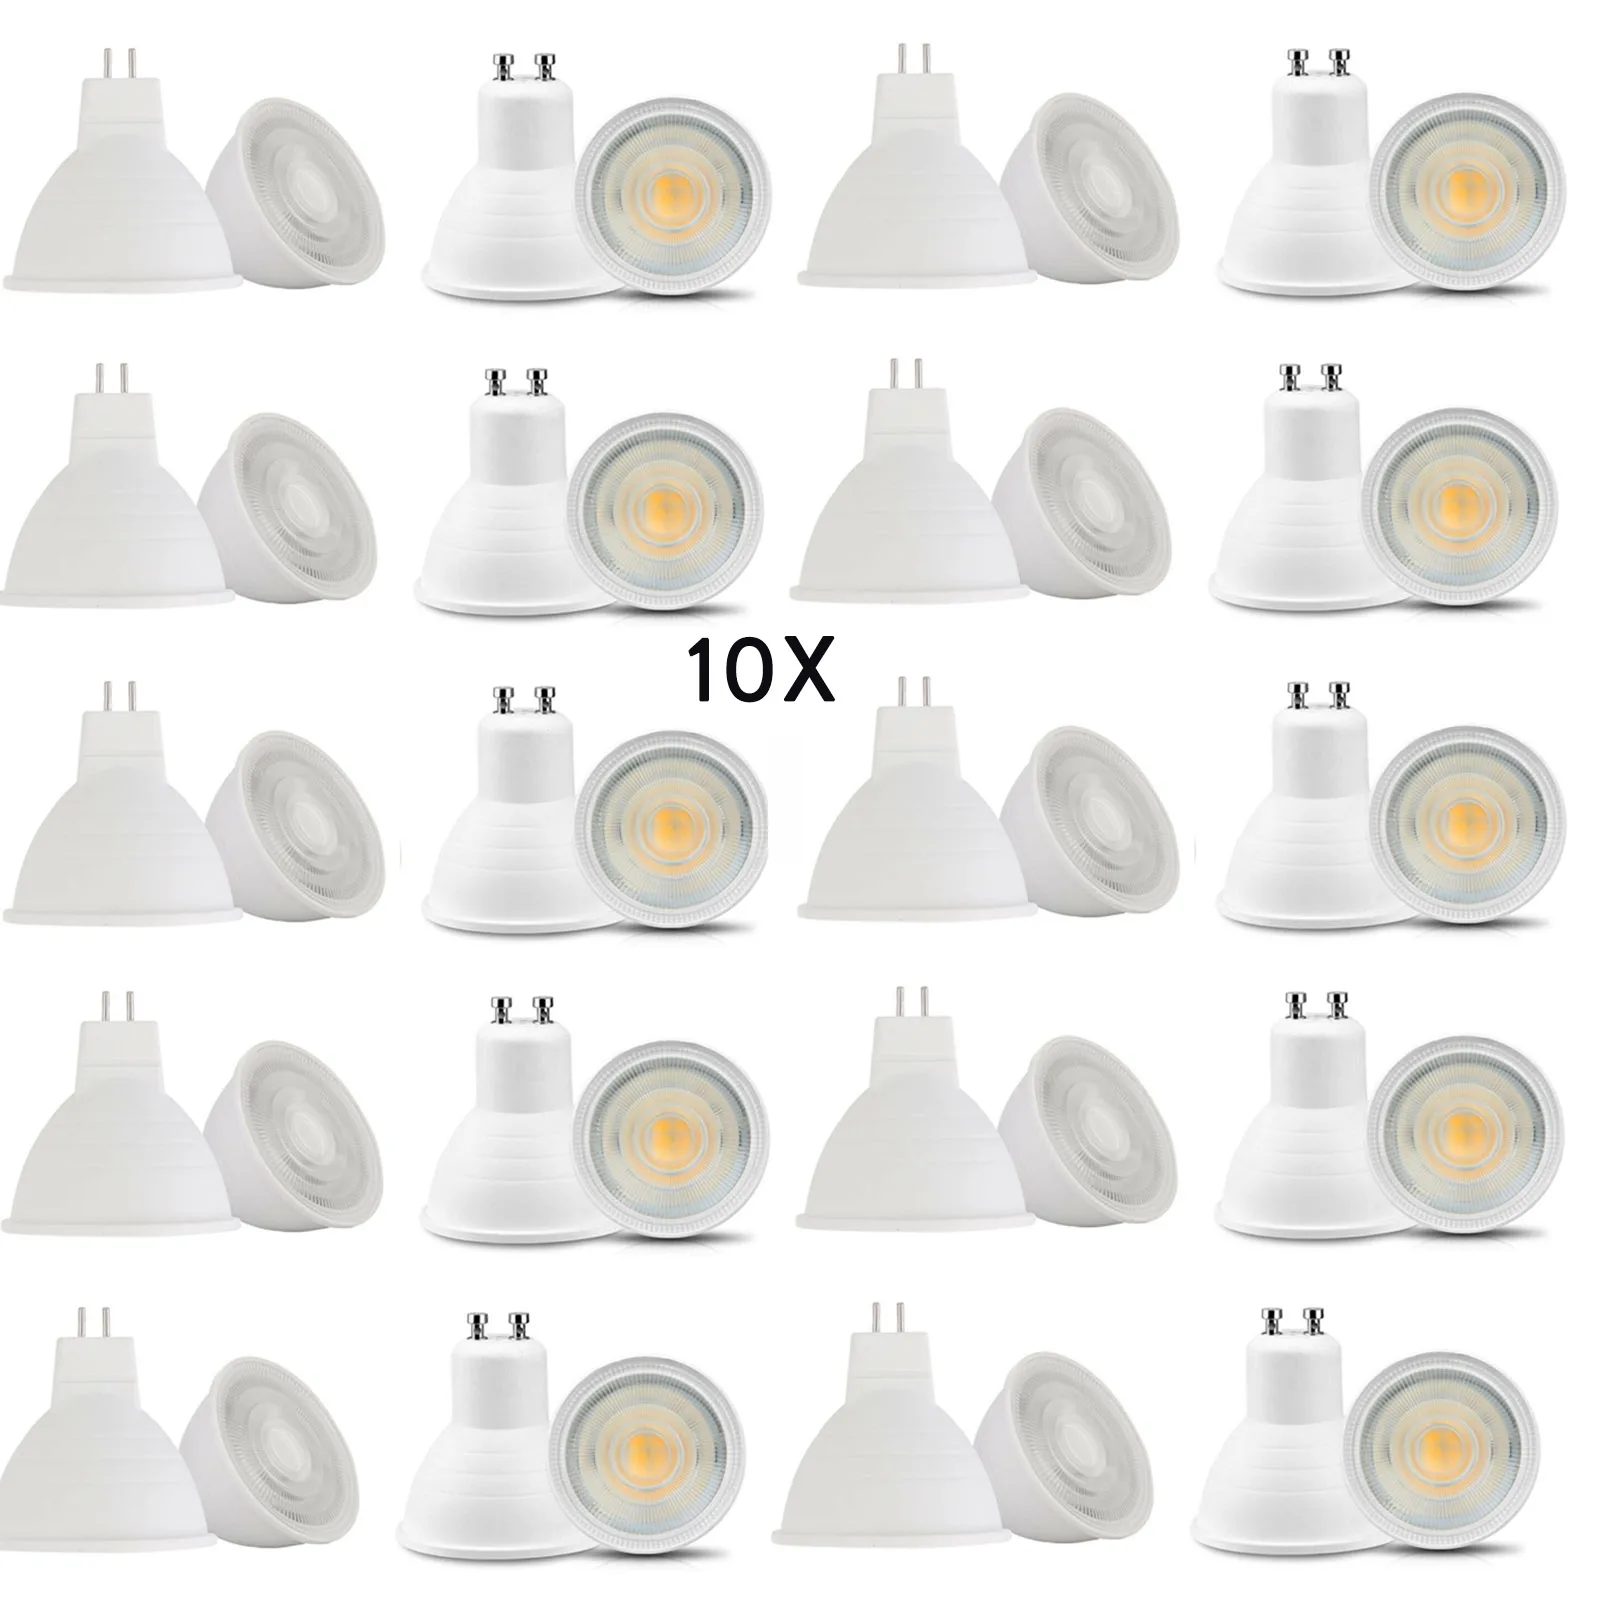 

10x Dimmable LED Lamp GU10 LED Bulb Spotlight 220V MR16 GU5.3 COB Chip 30 Degree Beam For Home Office Light Lamp